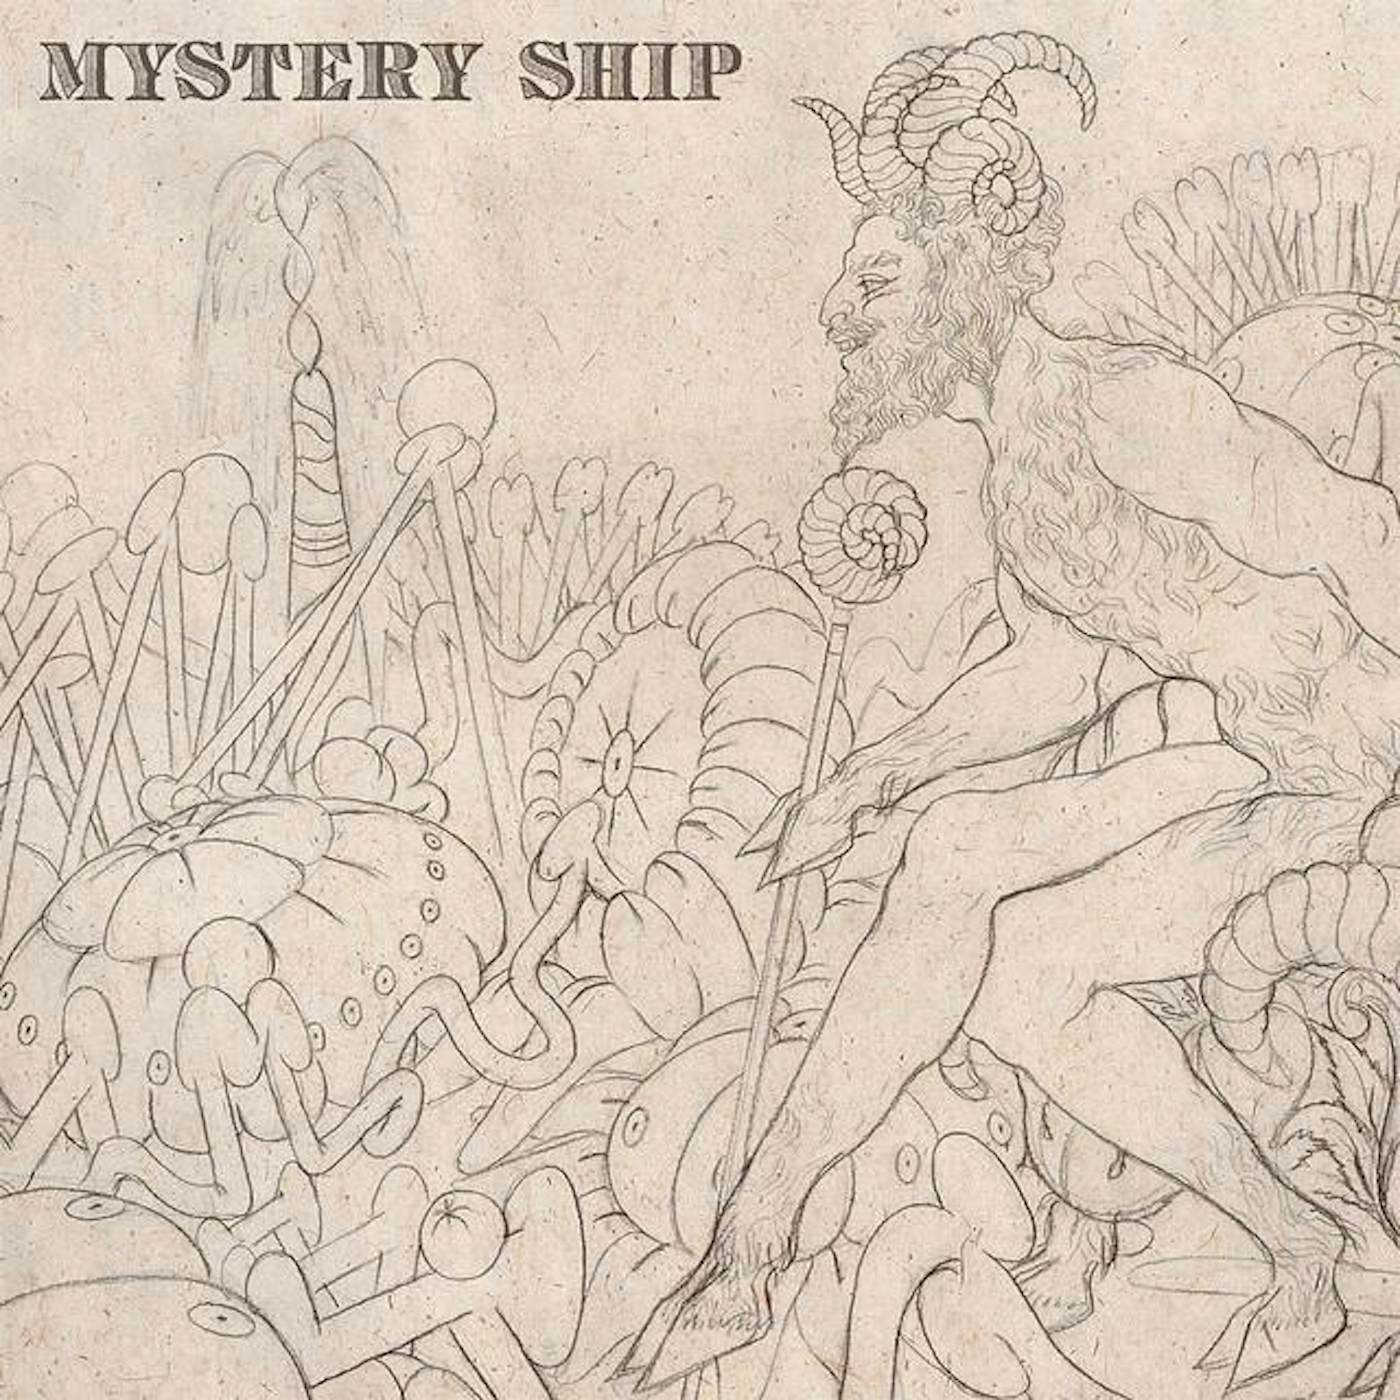 Mystery Ship